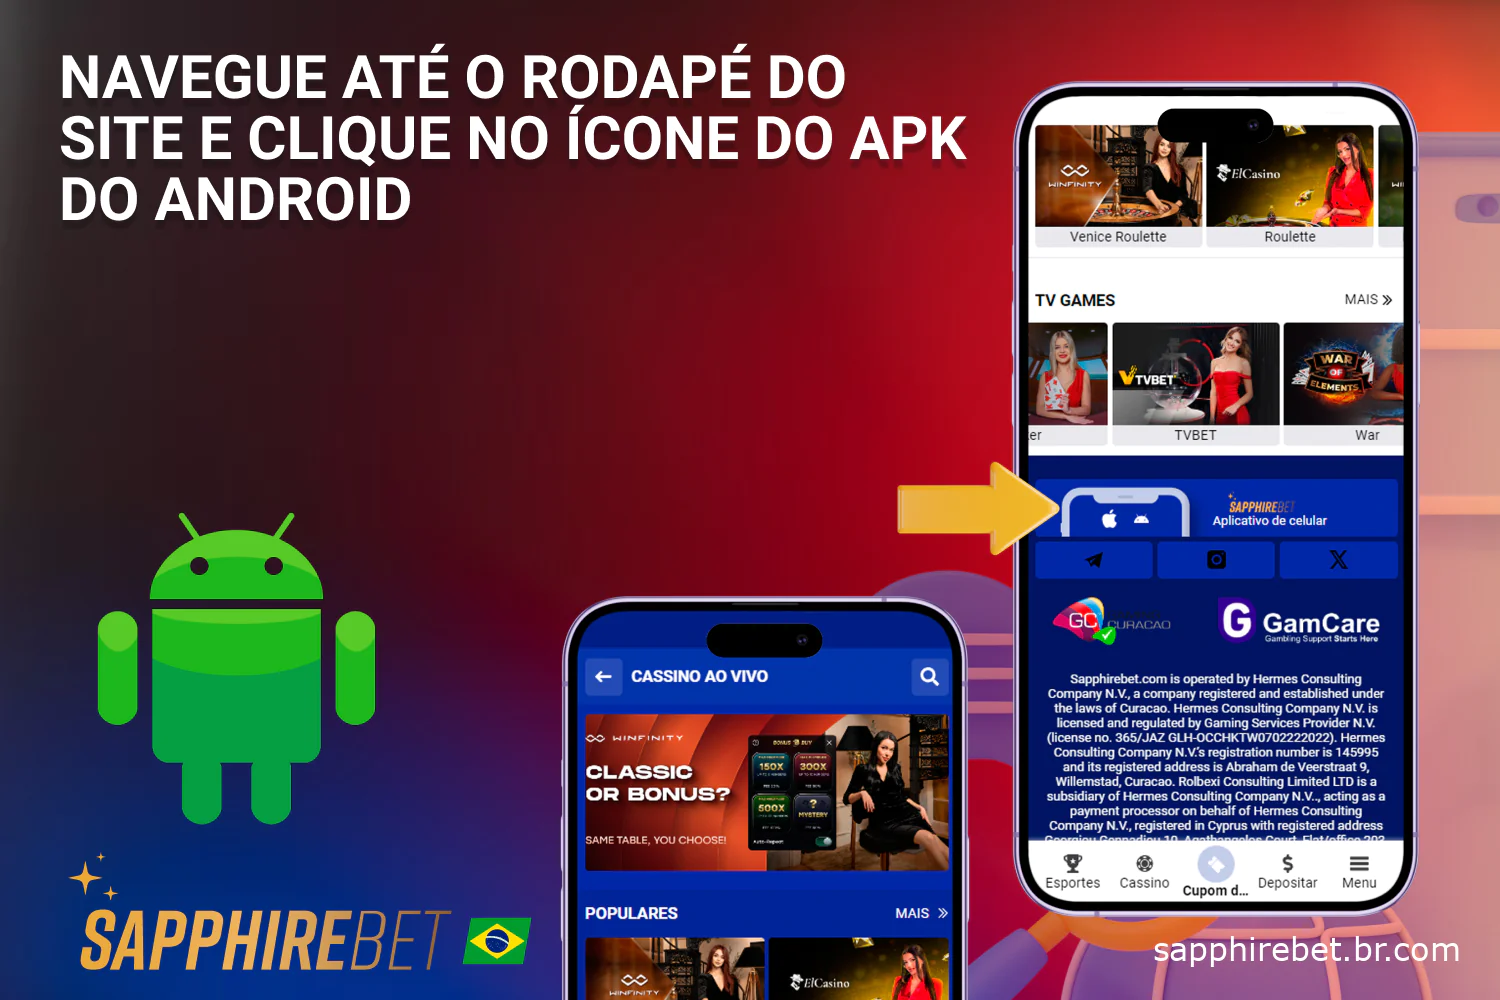 Clique no ícone apk para Android e faça o download do aplicativo Sapphirebet totalmente gratuito